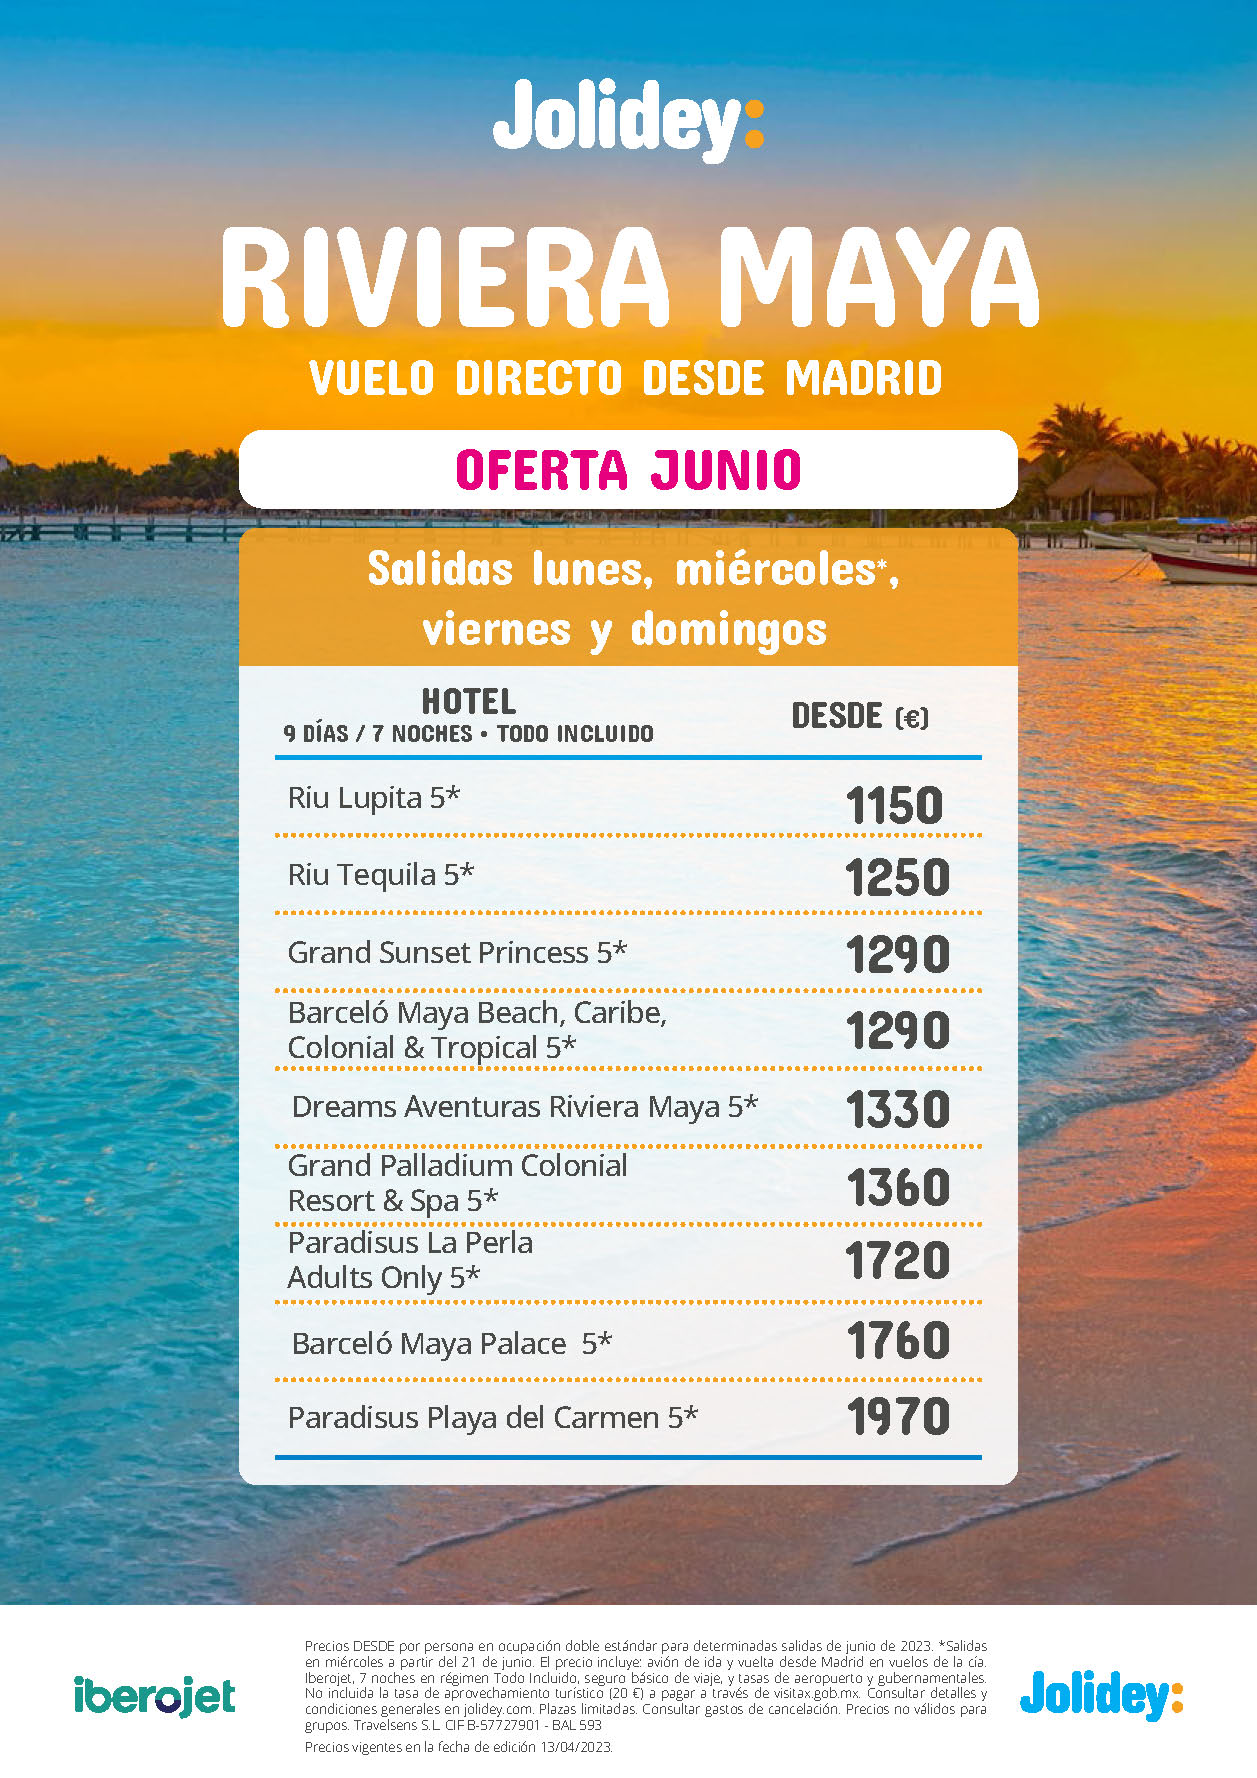 Oferta Jolidey Junio 2023 Estancia en Riviera Maya Mexico 9 dias Todo Incluido salida en vuelo directo desde Madrid